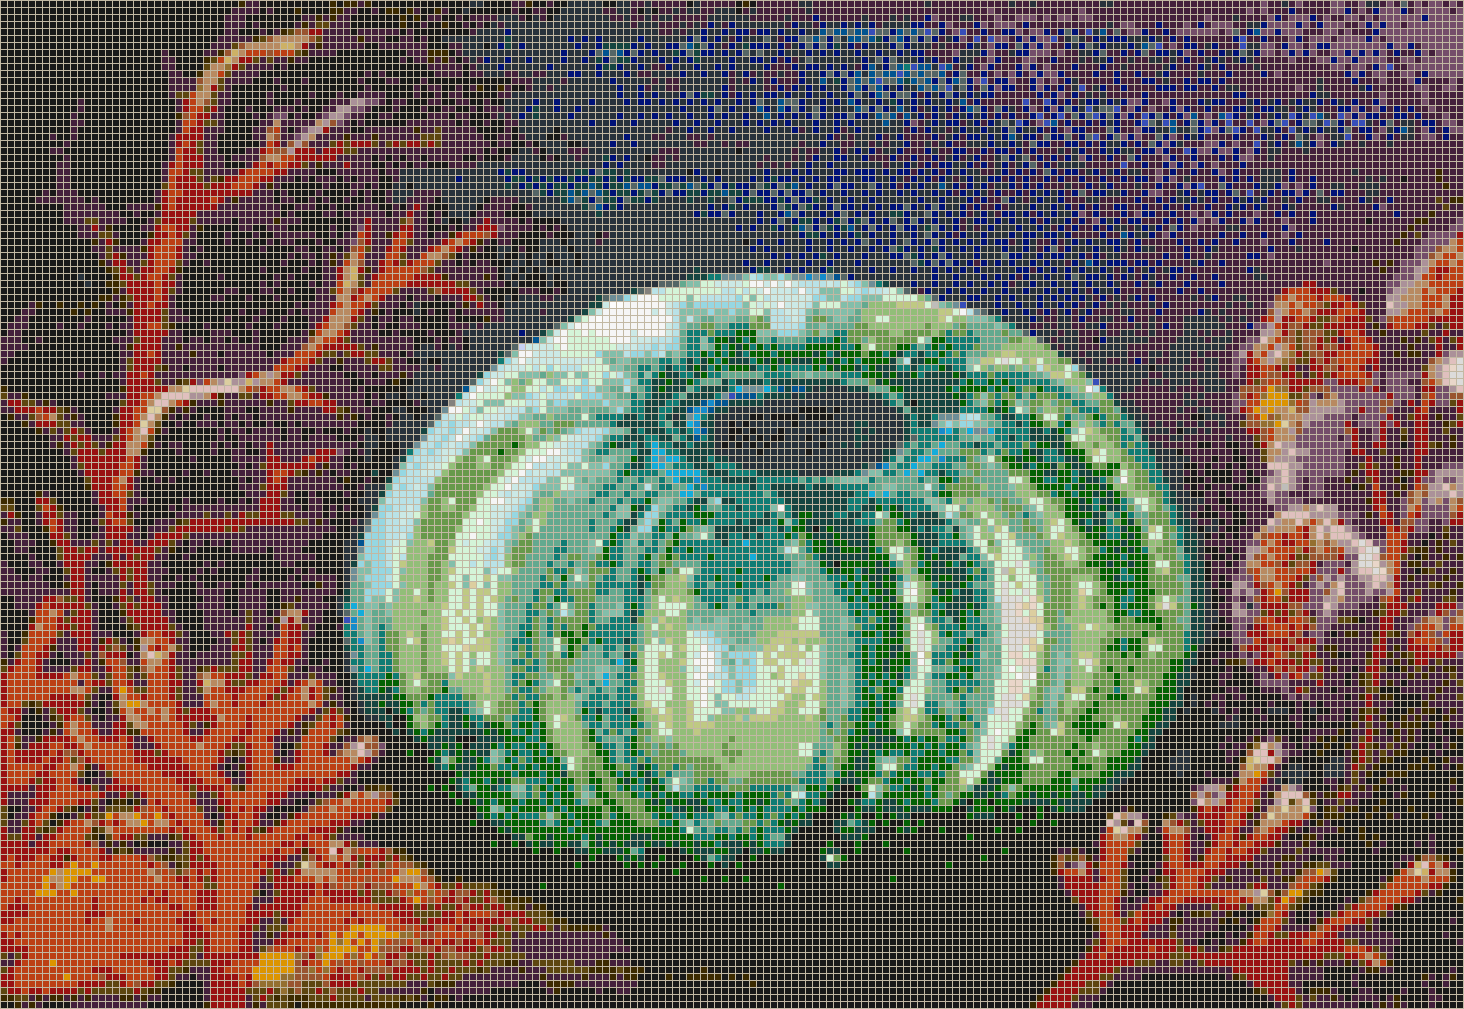 Emerald Urchin - Mosaic Tile Art